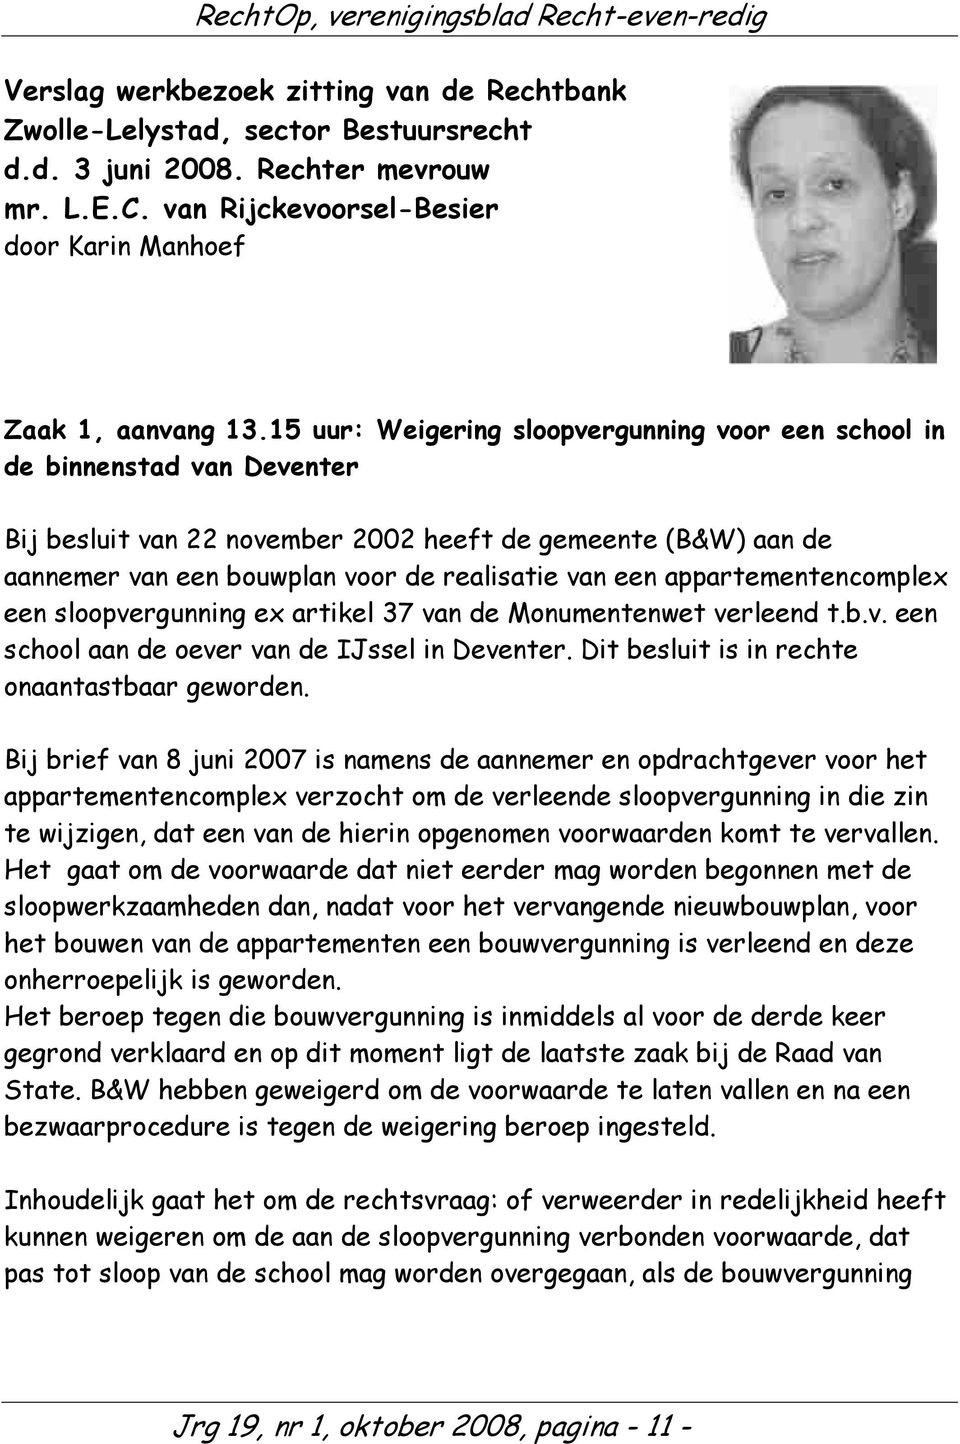 appartementencomplex een sloopvergunning ex artikel 37 van de Monumentenwet verleend t.b.v. een school aan de oever van de IJssel in Deventer. Dit besluit is in rechte onaantastbaar geworden.